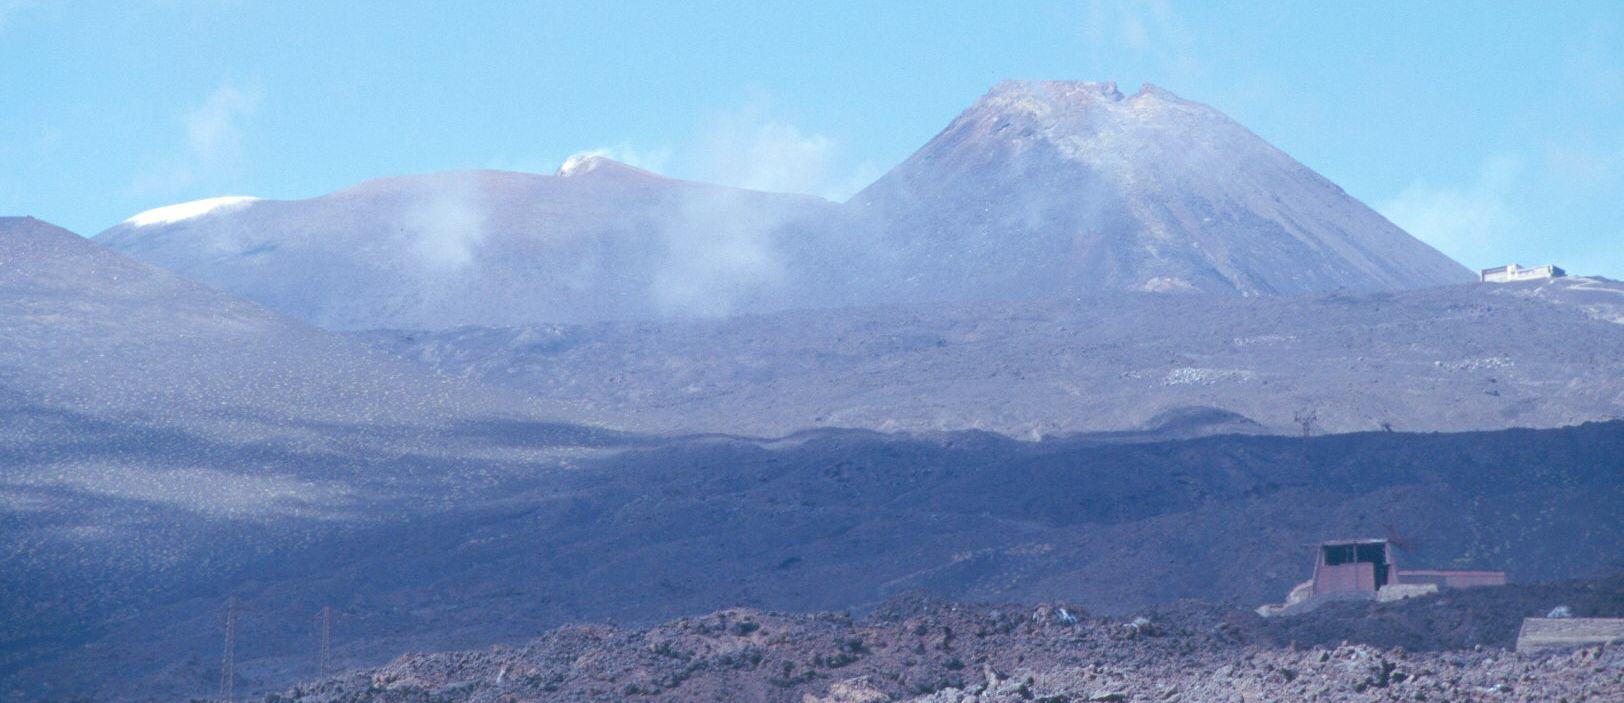 La Bocca Nuova, abierta en 1968, y el cráter del SE, en 1971 (fotografía de 2001) Se observa a la derecha el Piccolo Refugio